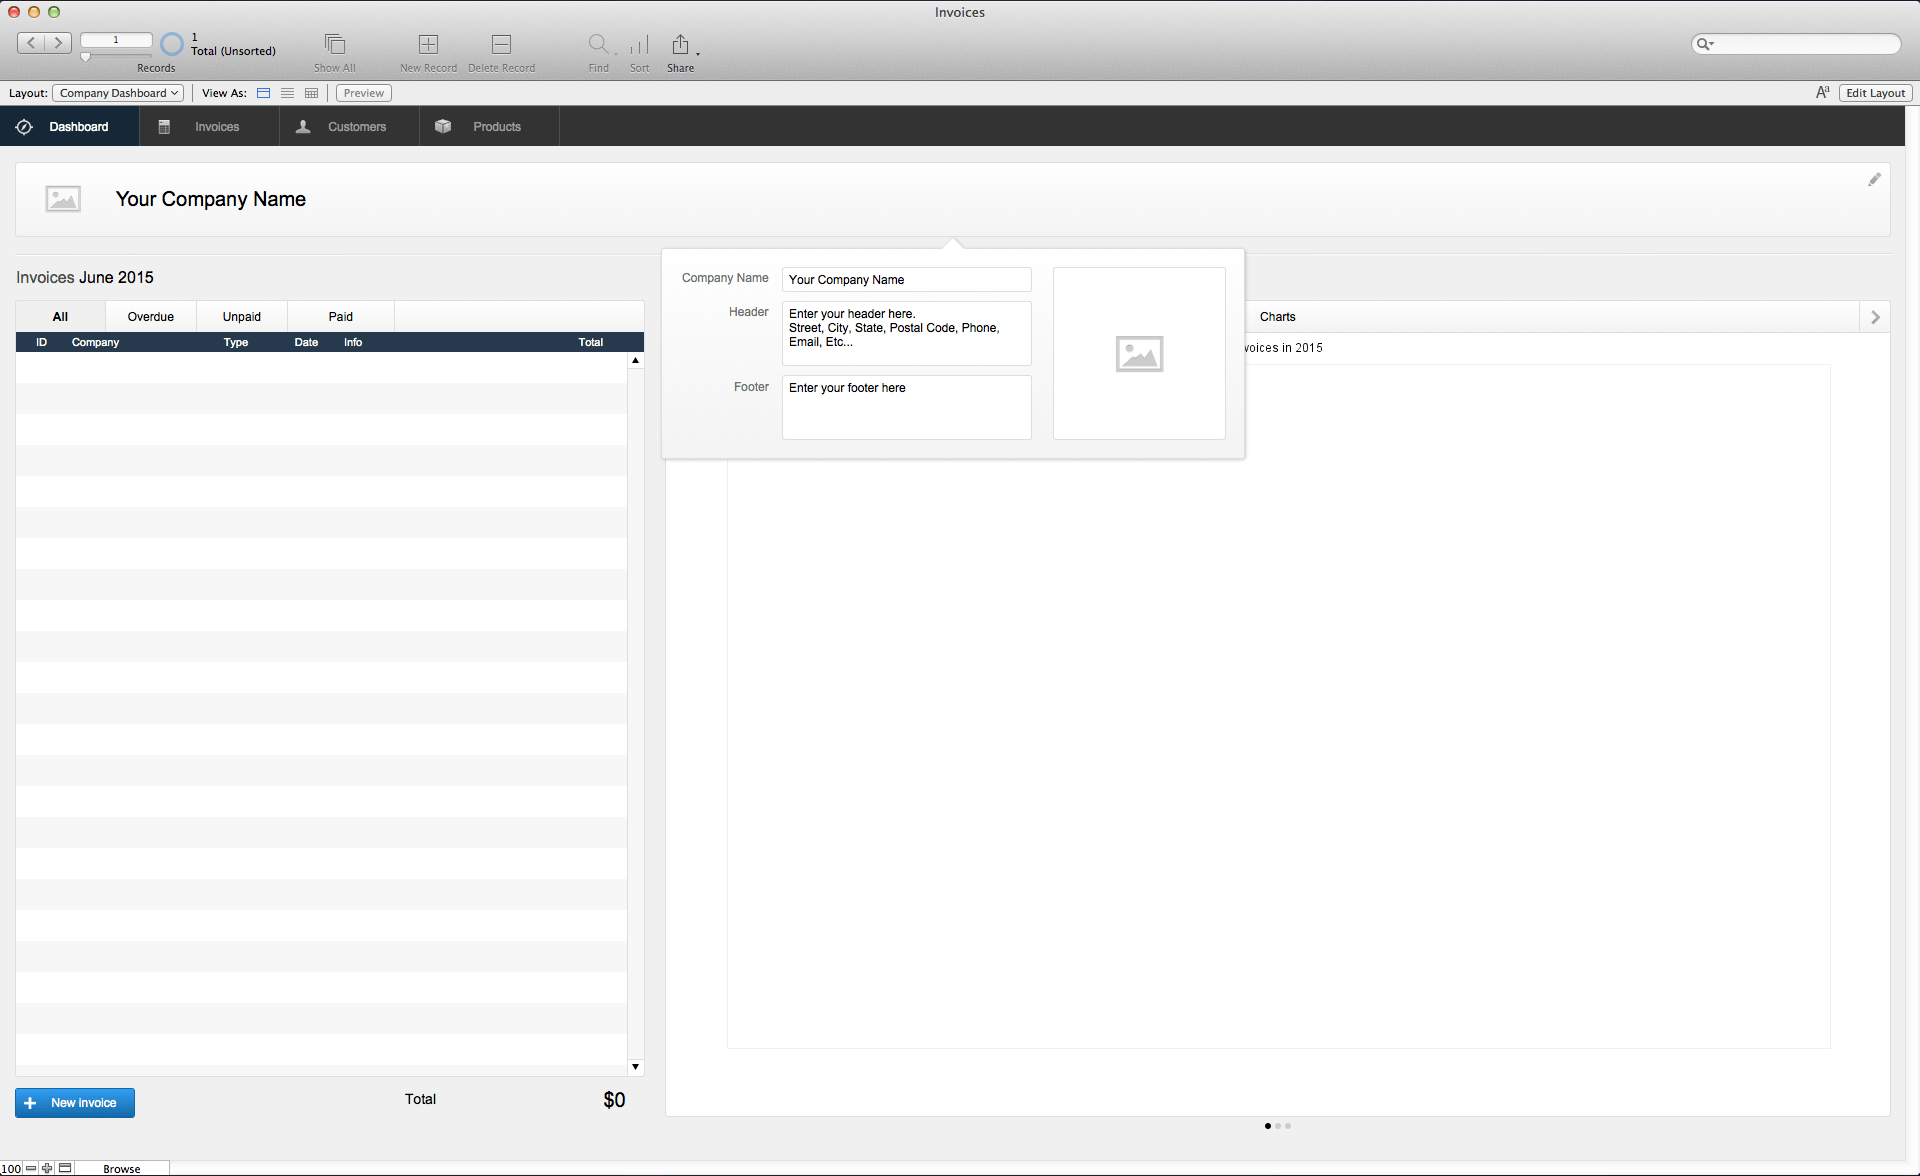 filemaker pro for mac osx yosemite 10.10.5